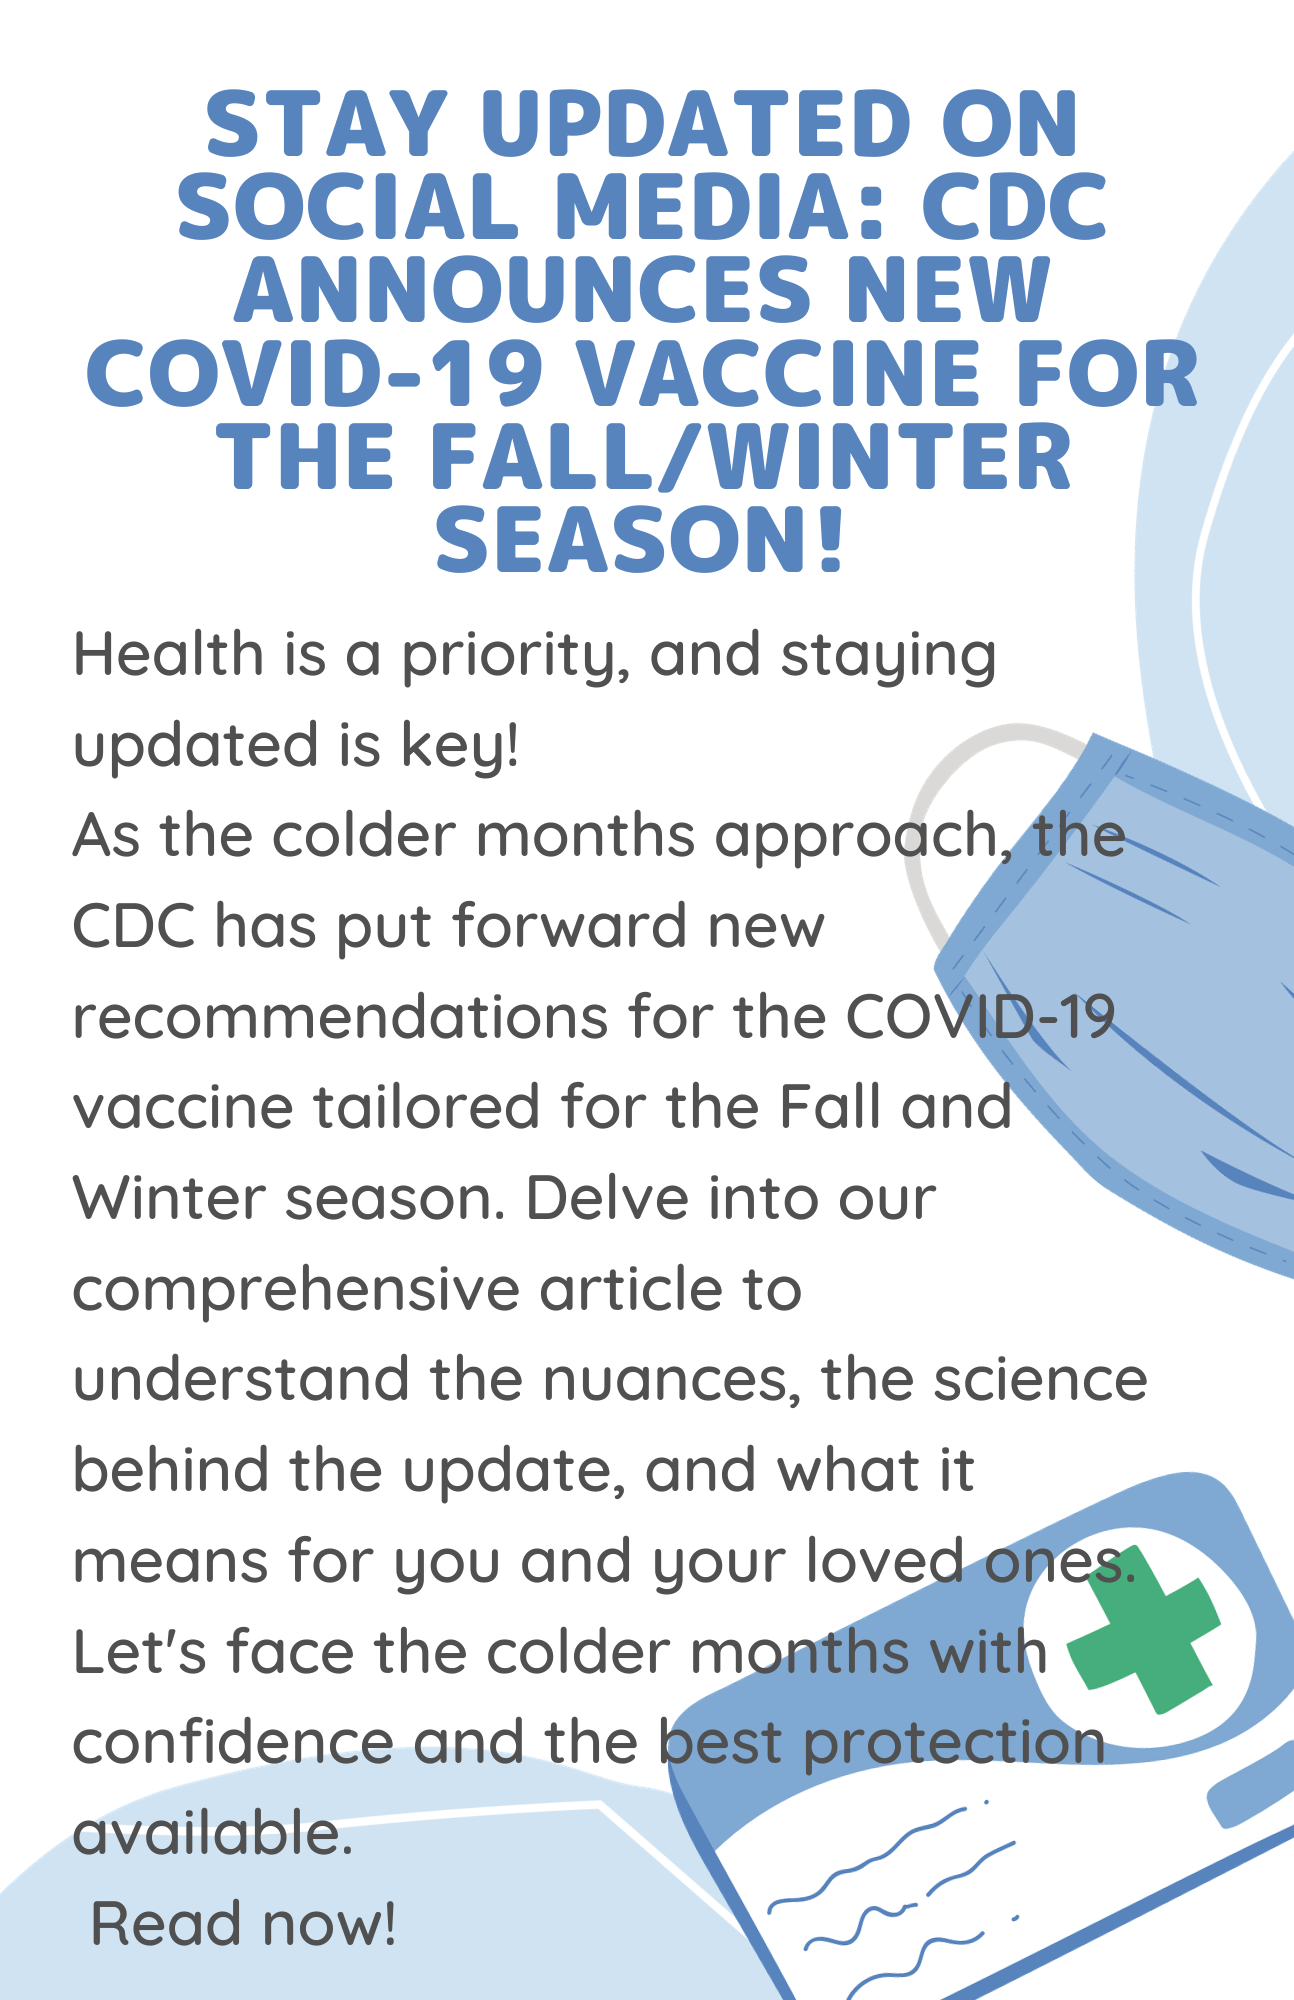 CDC Announces New COVID-19 Vaccine for the Fall/Winter Season!